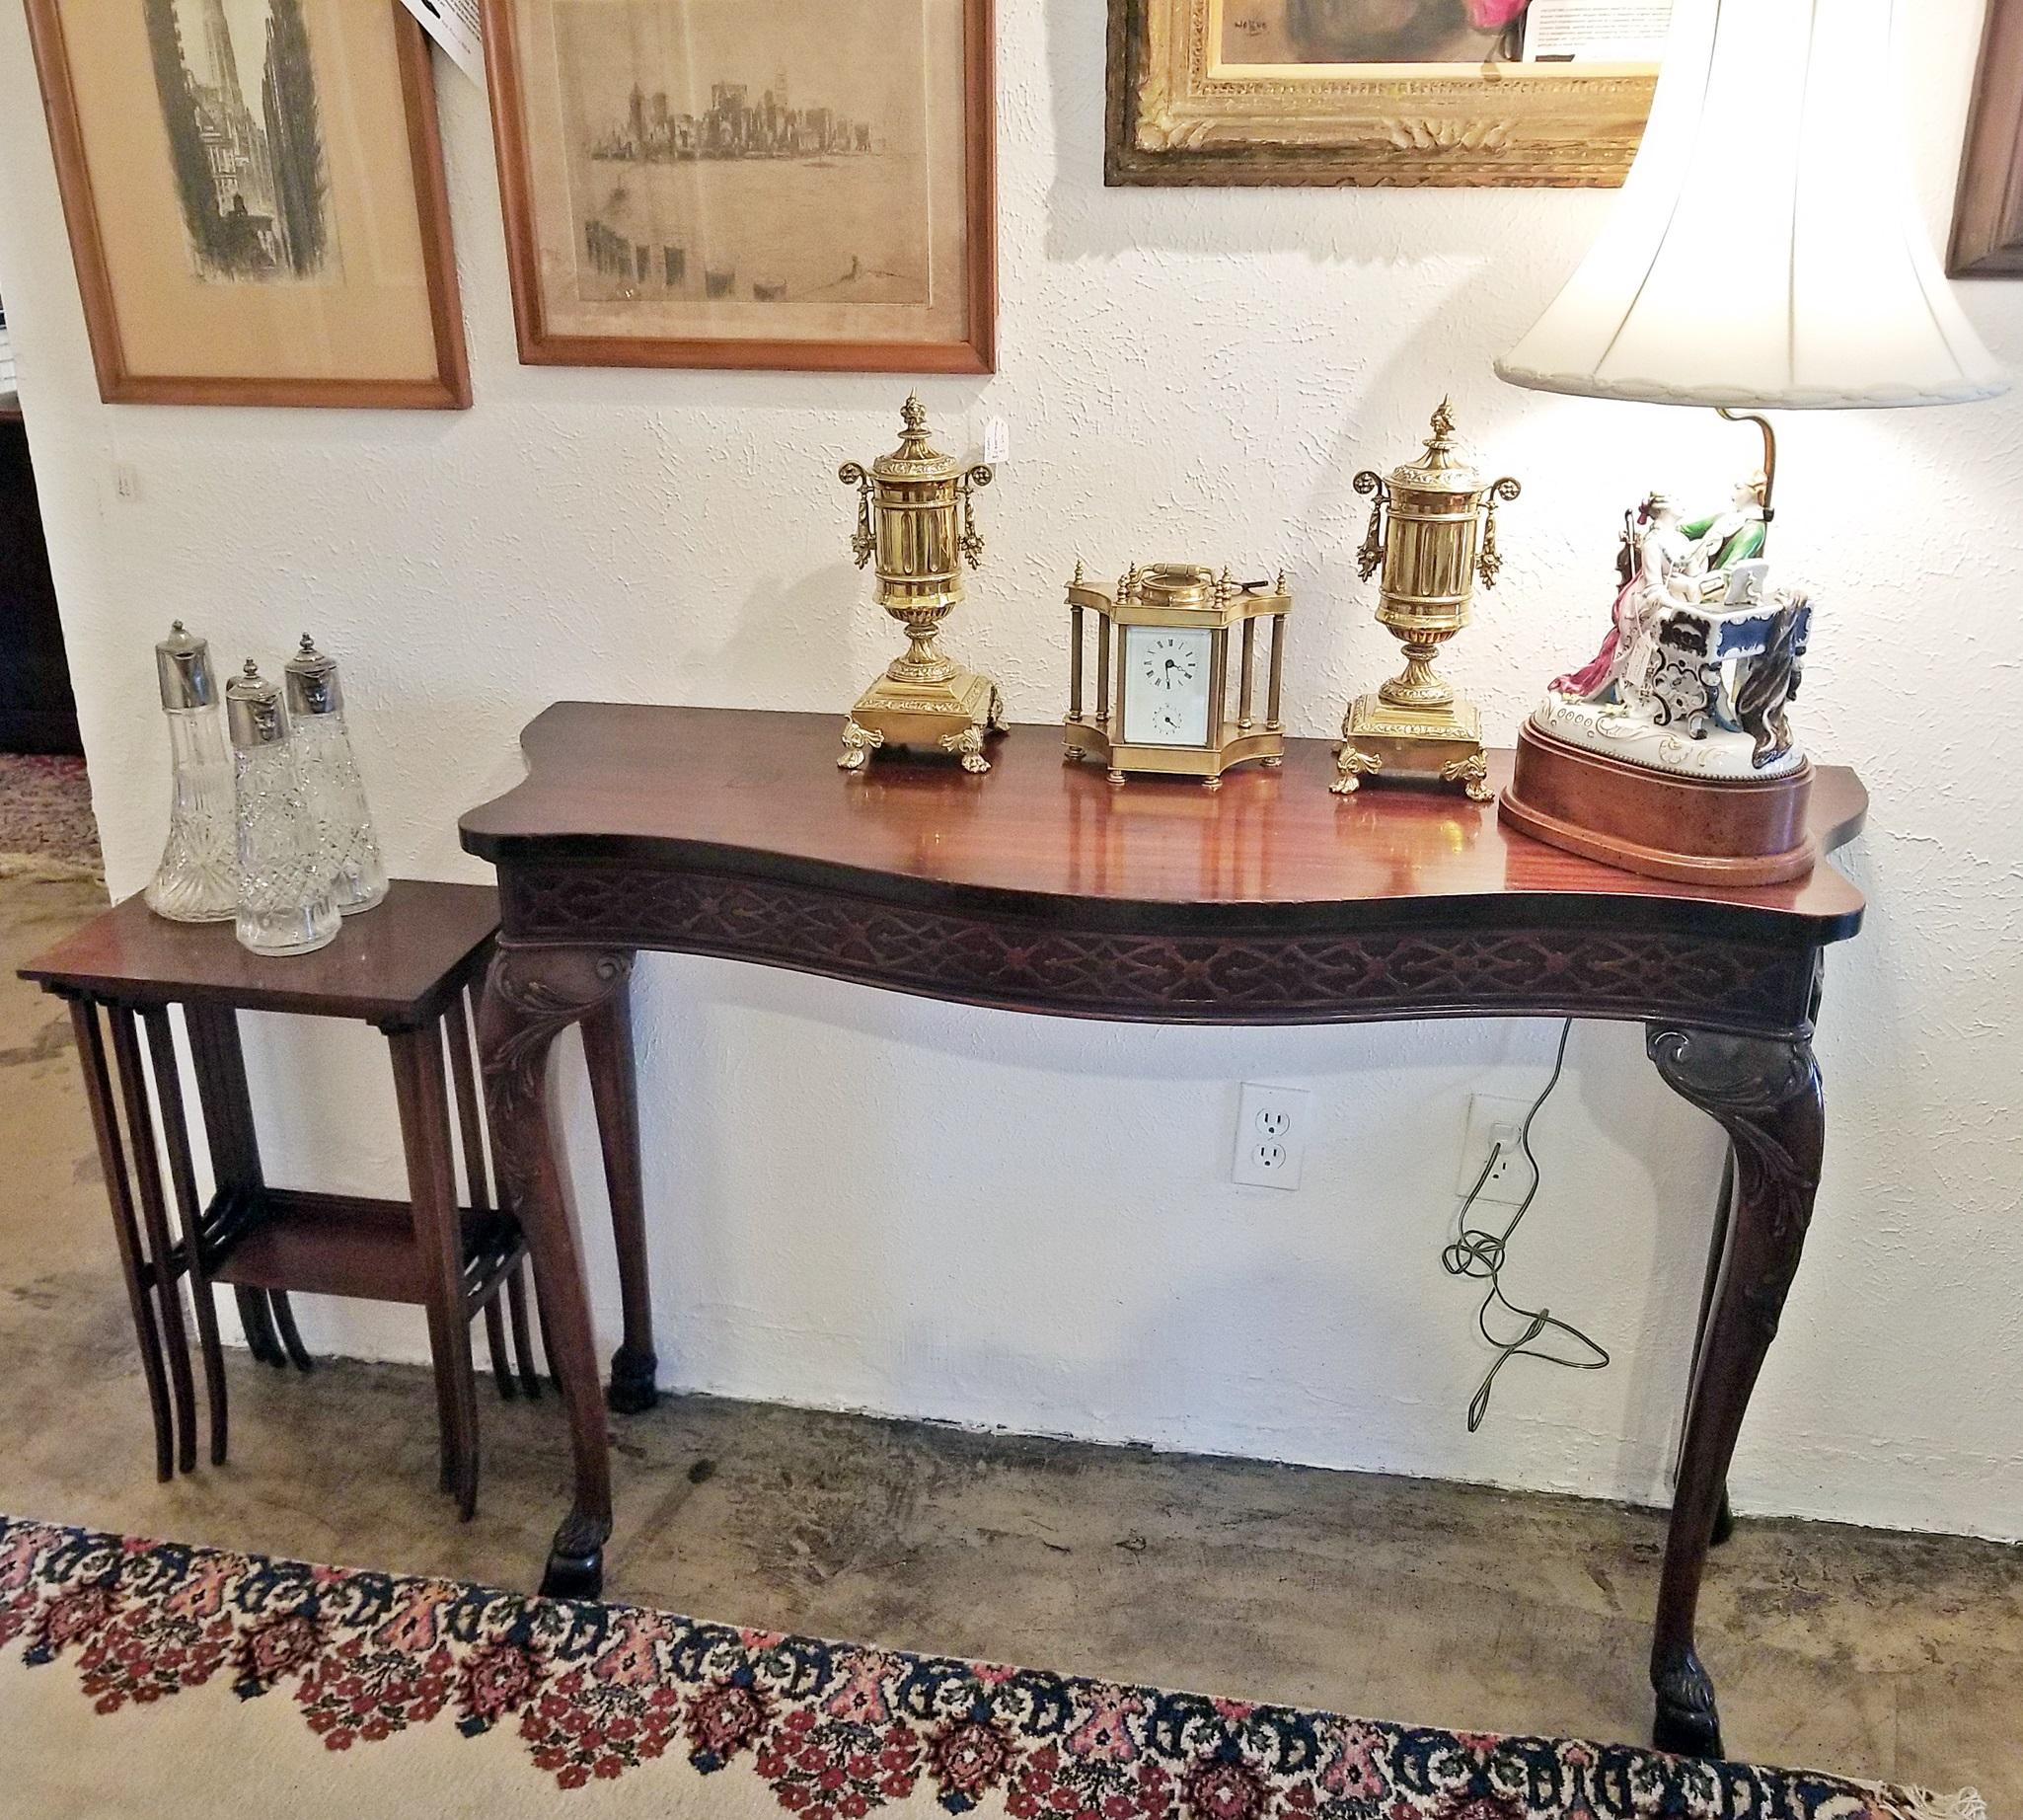 PRESENTE une GORGEUSE table console de style Chippendale du début du 20e siècle, avec pieds en sabot, aux proportions soignées.

Datant d'environ 1900-20, cette table est de style classique Chippendale.

Dessus en forme de serpentin incurvé.

Il